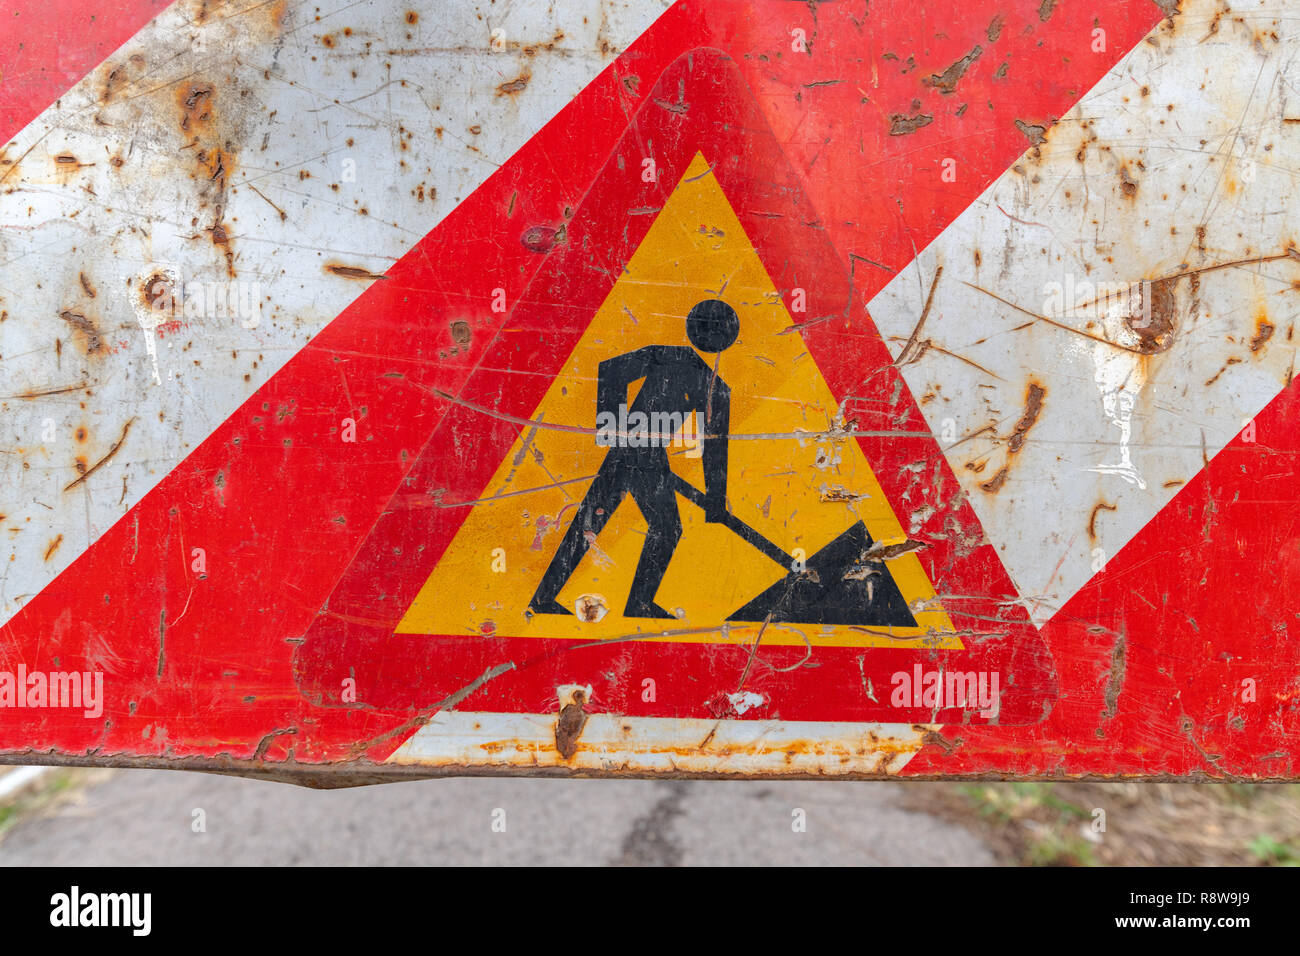 Signe de travaux routiers, signalisation trafic vieux métal Banque D'Images